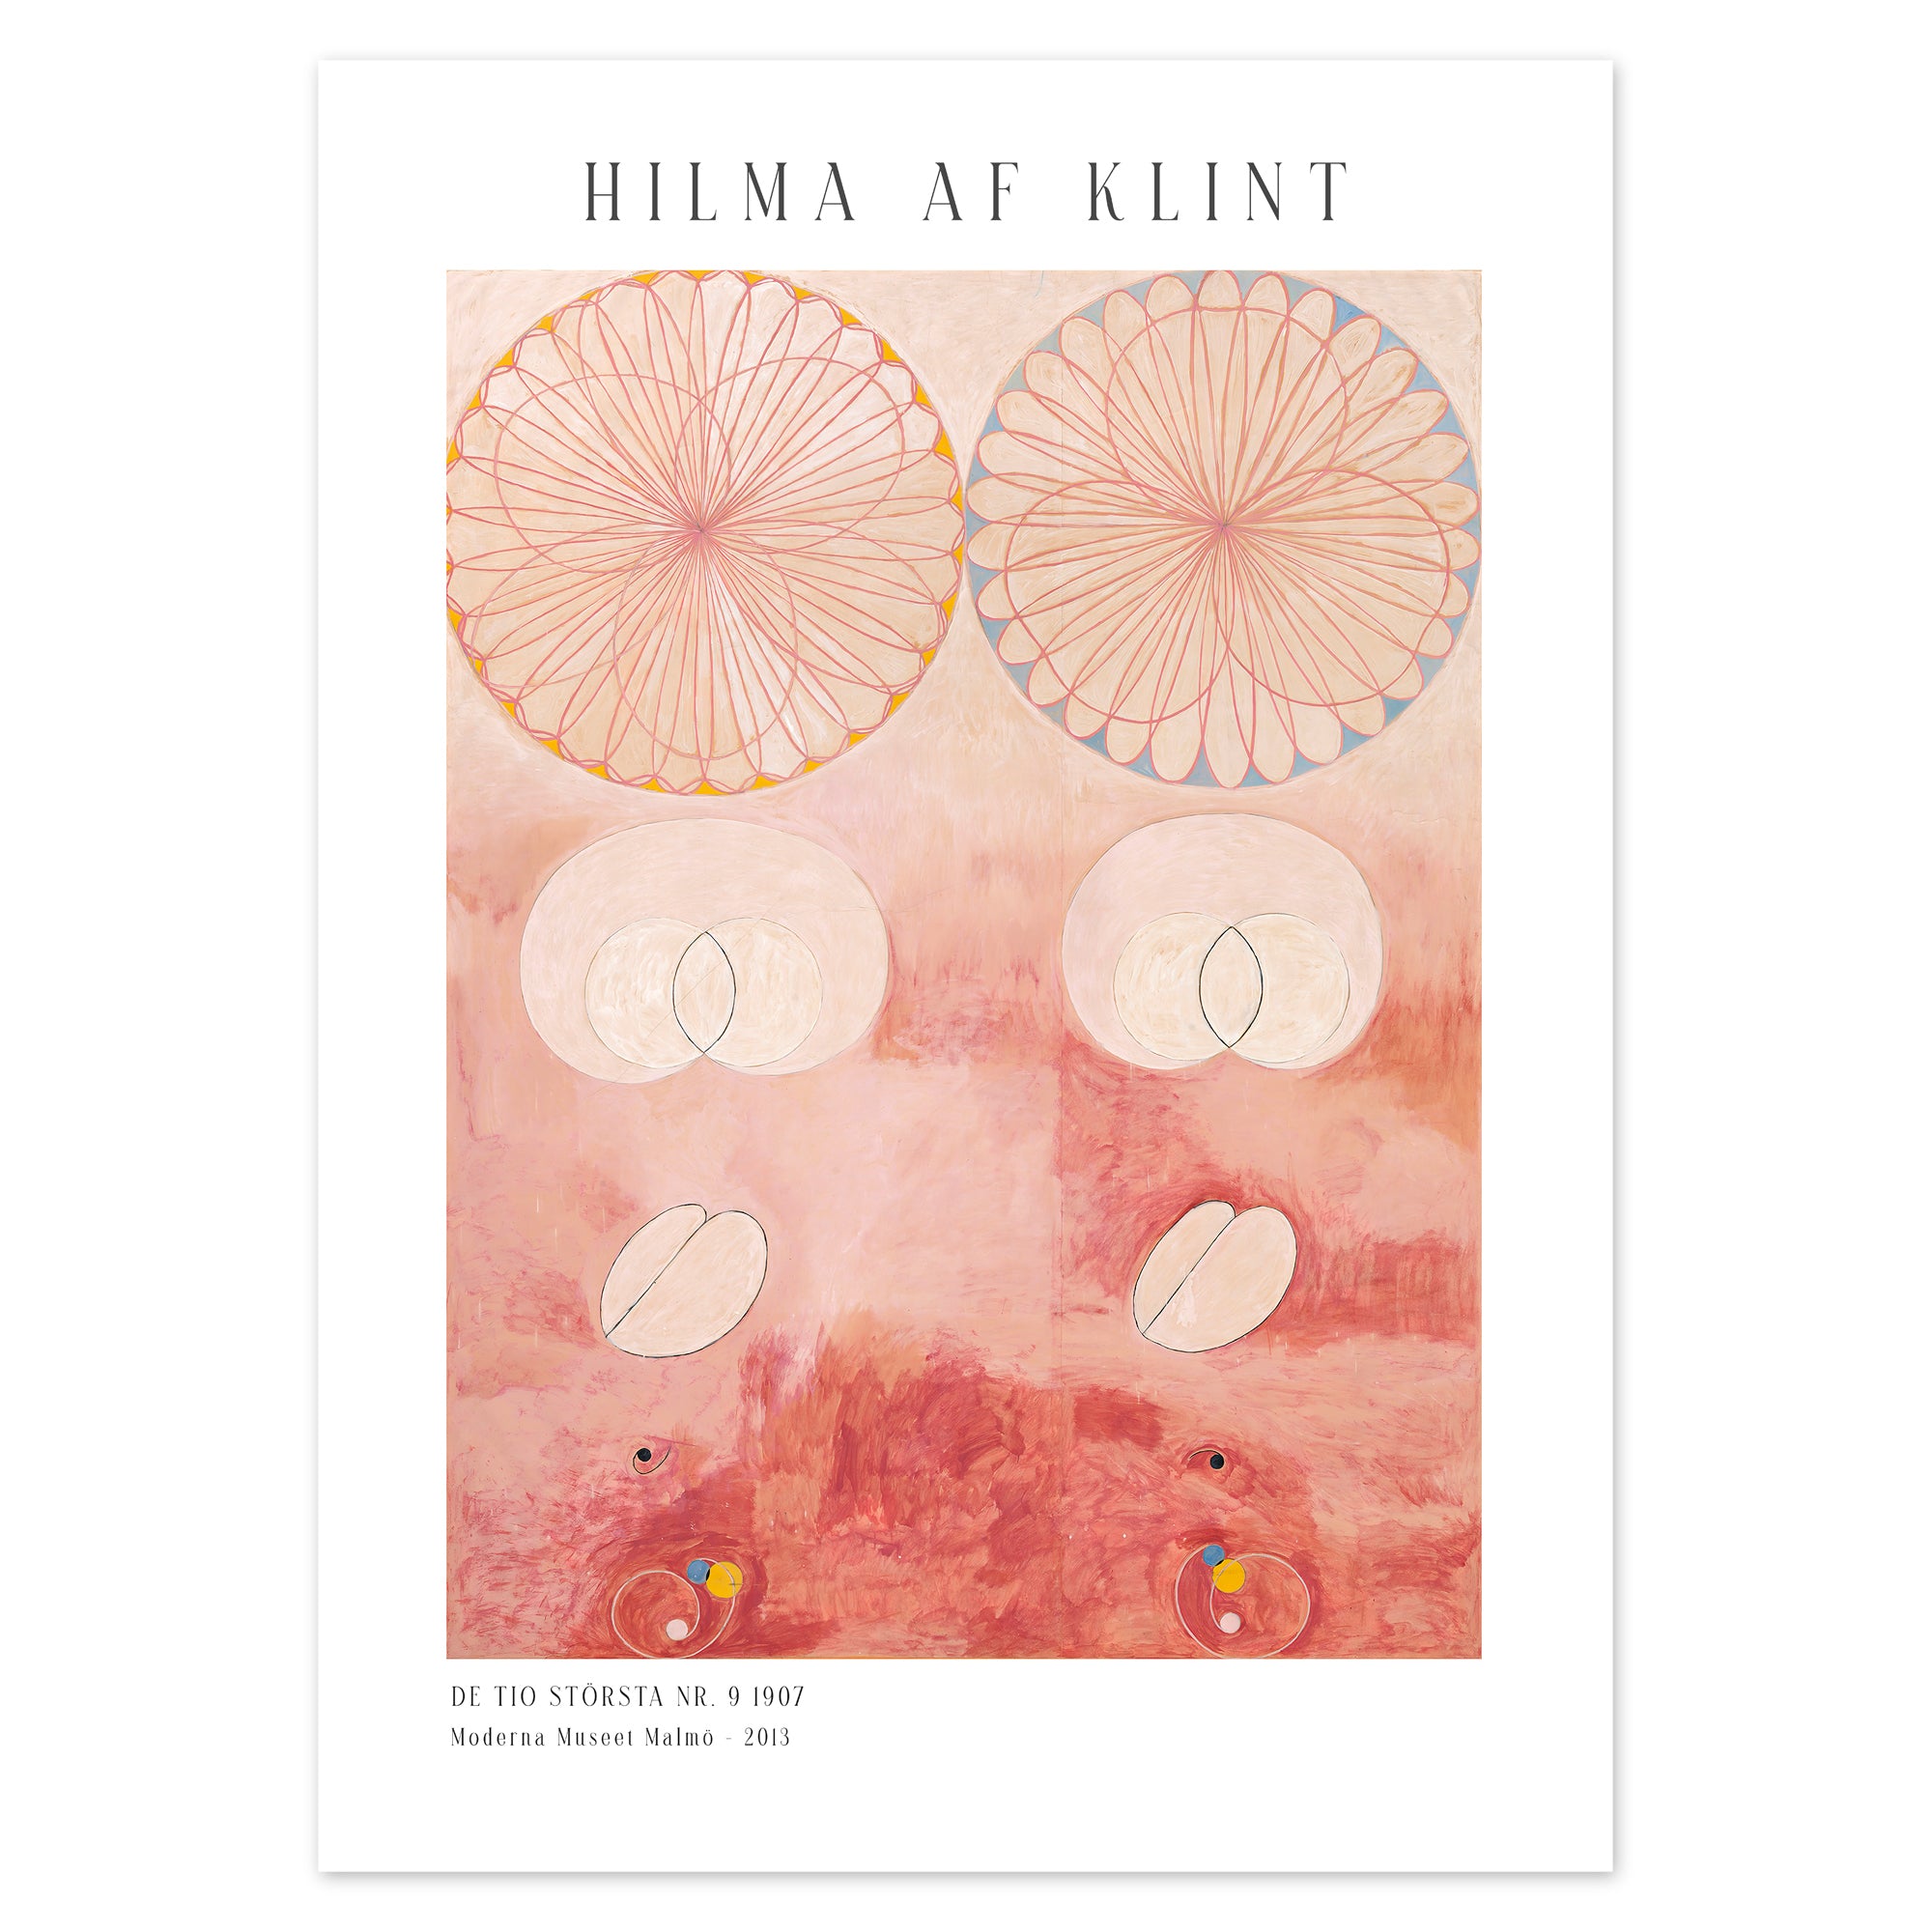 Hilma af Klint Poster - De tio största nr. 9